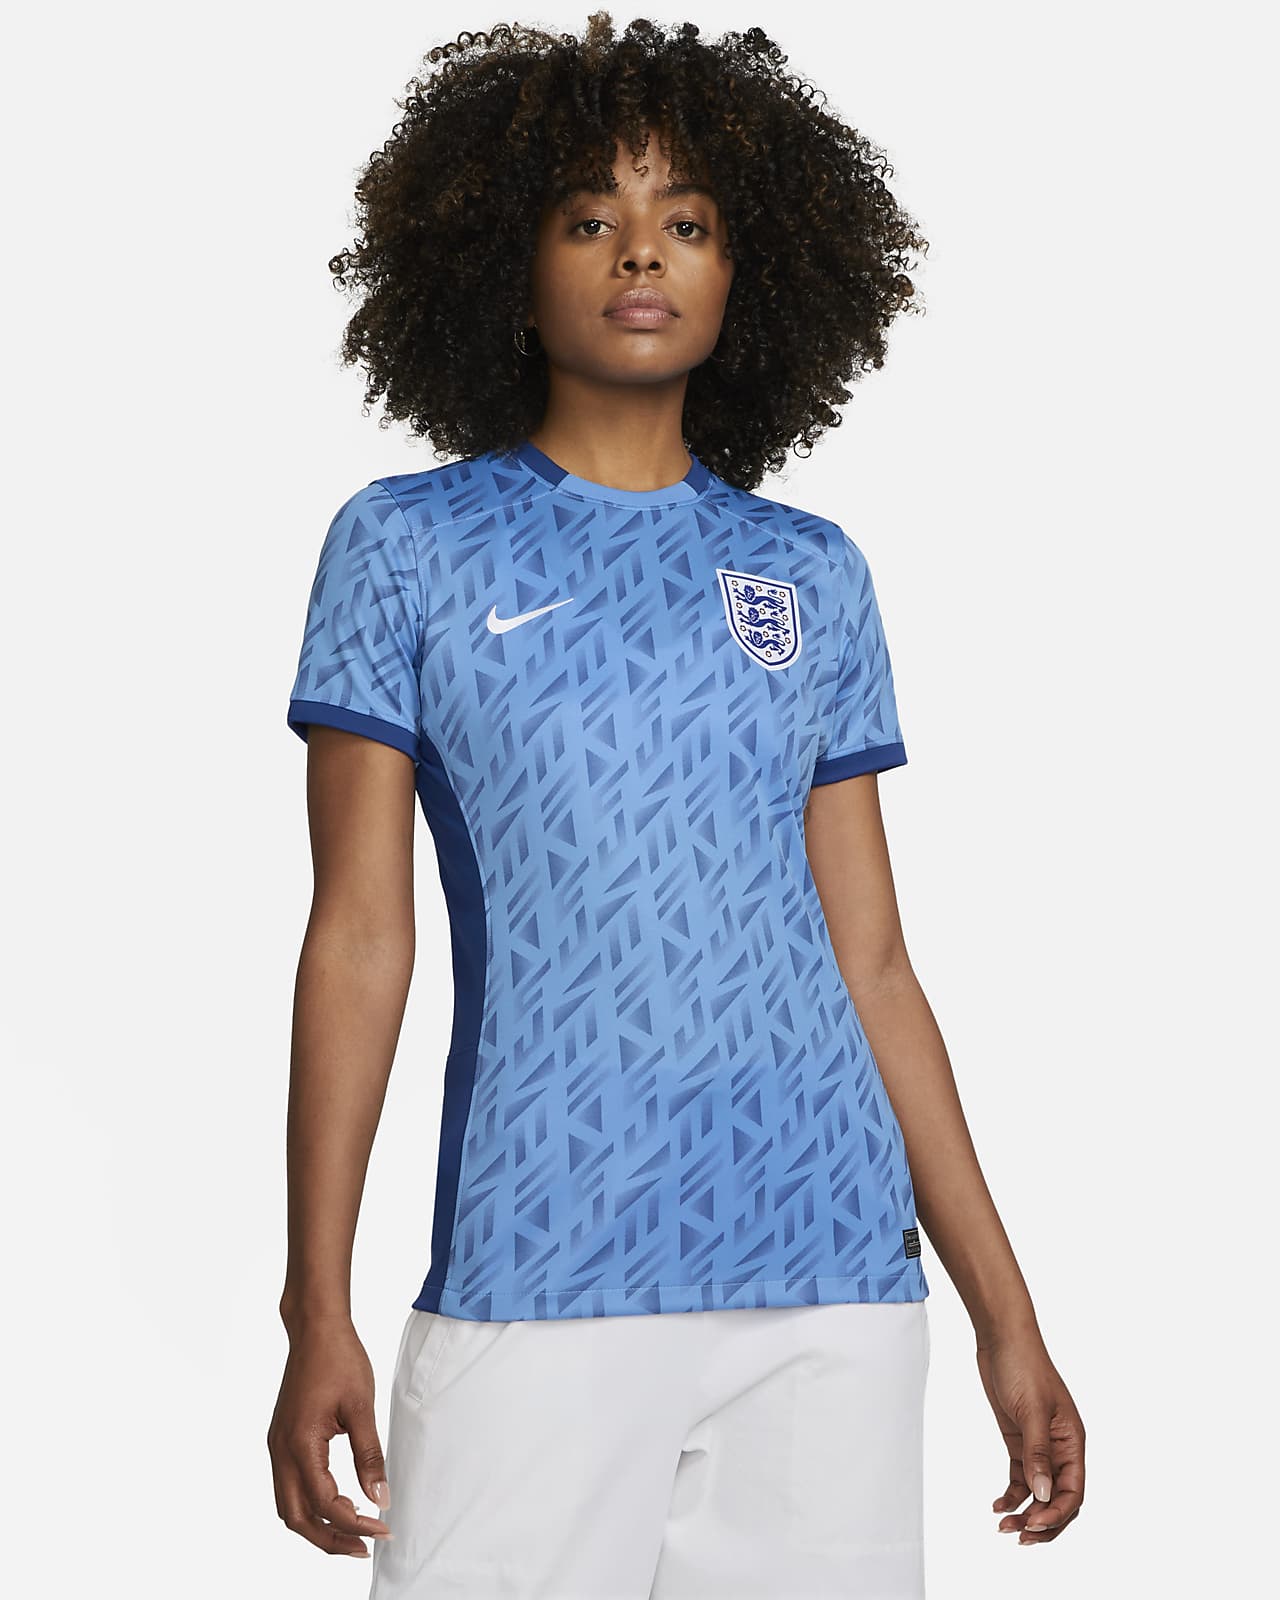 Γυναικεία ποδοσφαιρική φανέλα Nike Dri-FIT εκτός έδρας Αγγλία 2023 Stadium